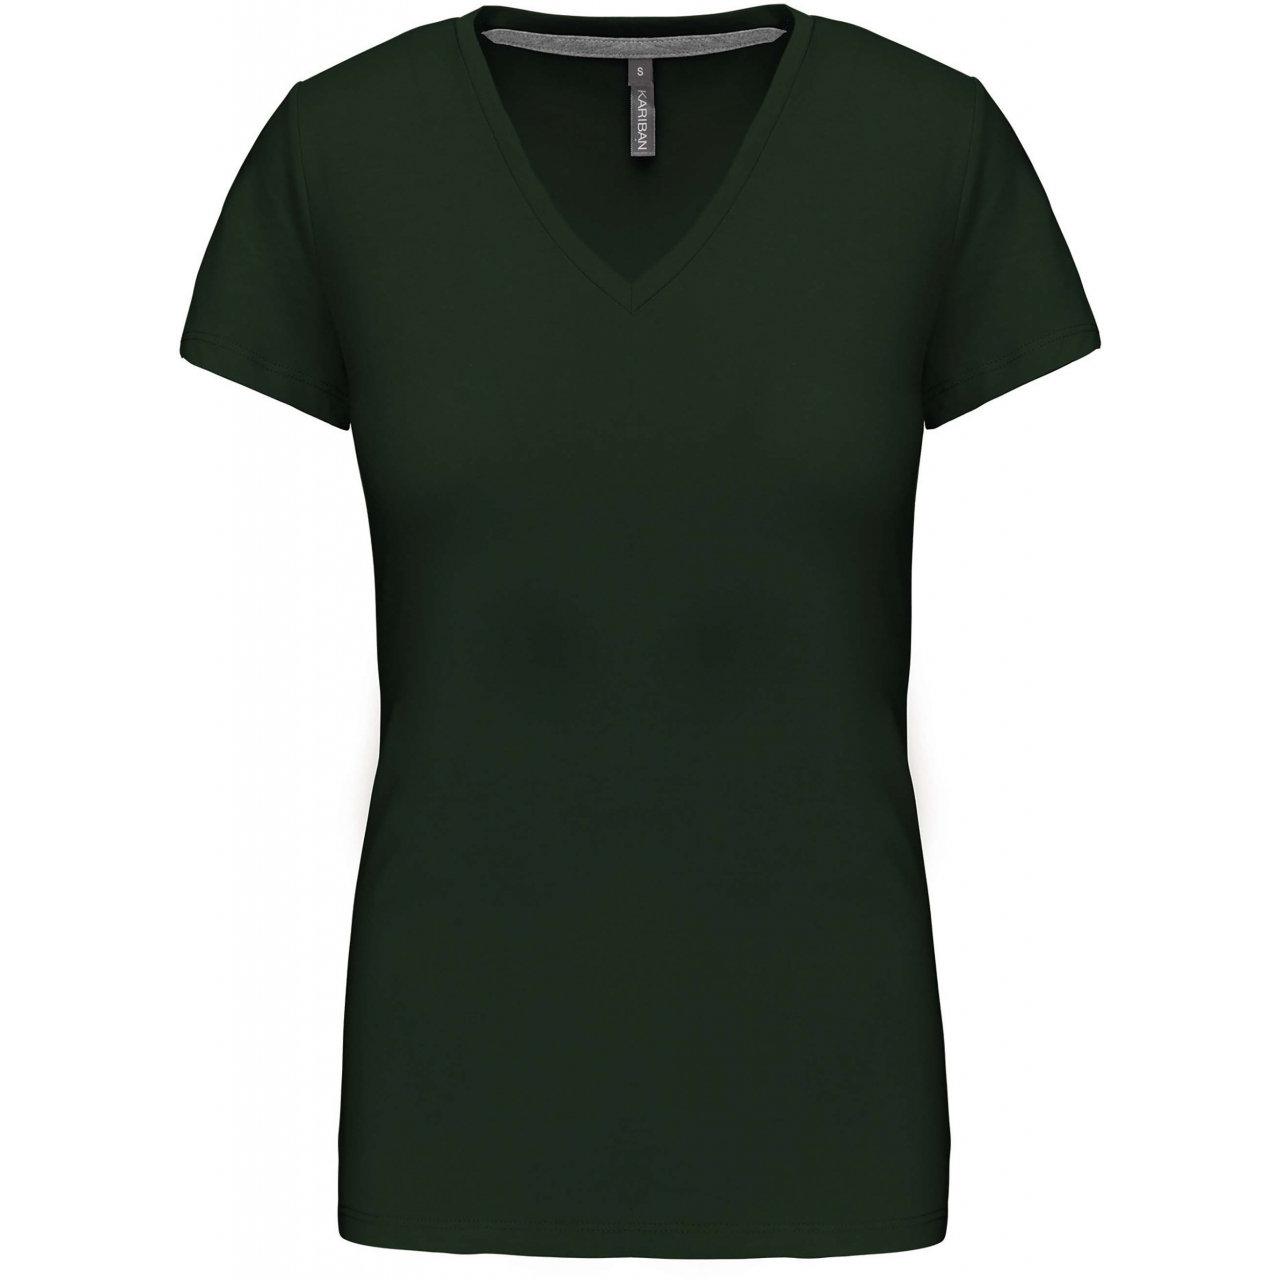 Dámské tričko Kariban V-neck s krátkým rukávem - tmavě zelené, M